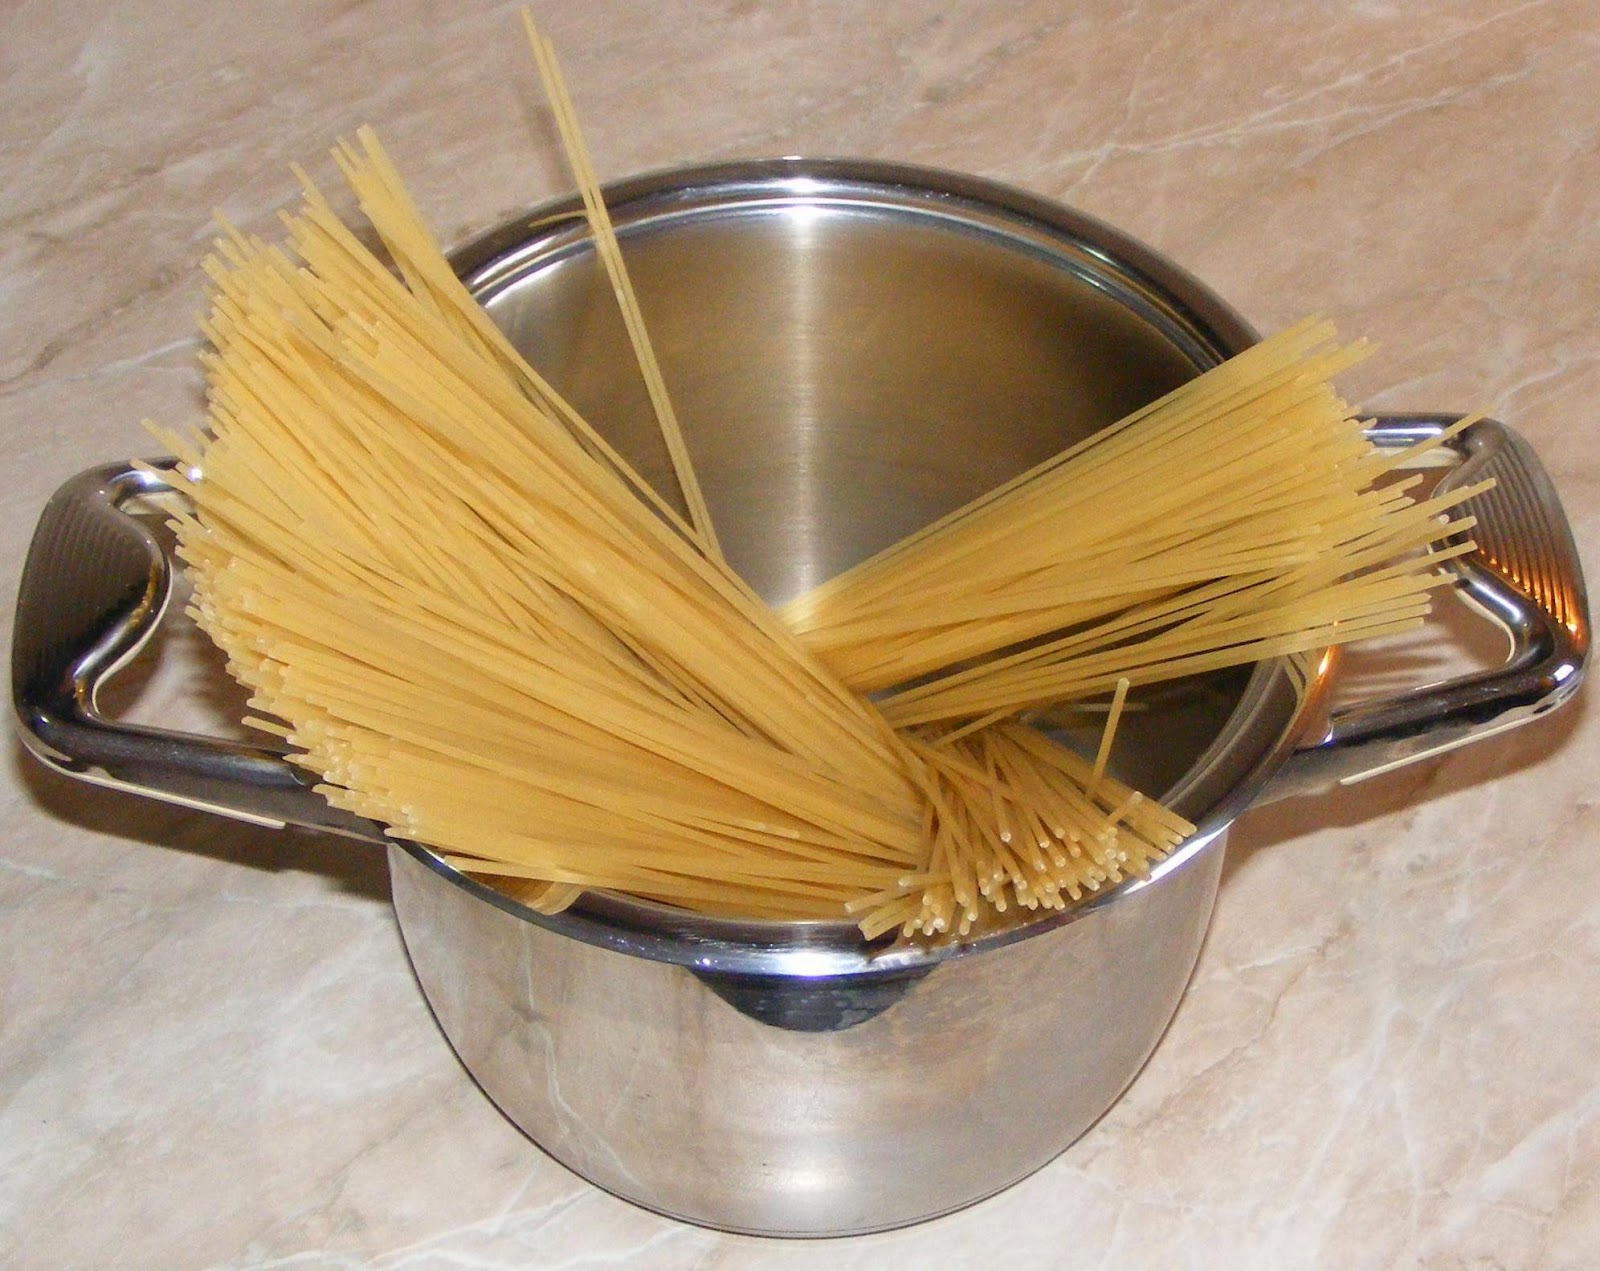 spaghete, retete cu spaghete, reteta cu spaghete, retete si preparate culinare cu spaghete, preparate cu spaghete, retete cu paste, reteta cu paste, spaghete pentru mancaruri cu sos, 